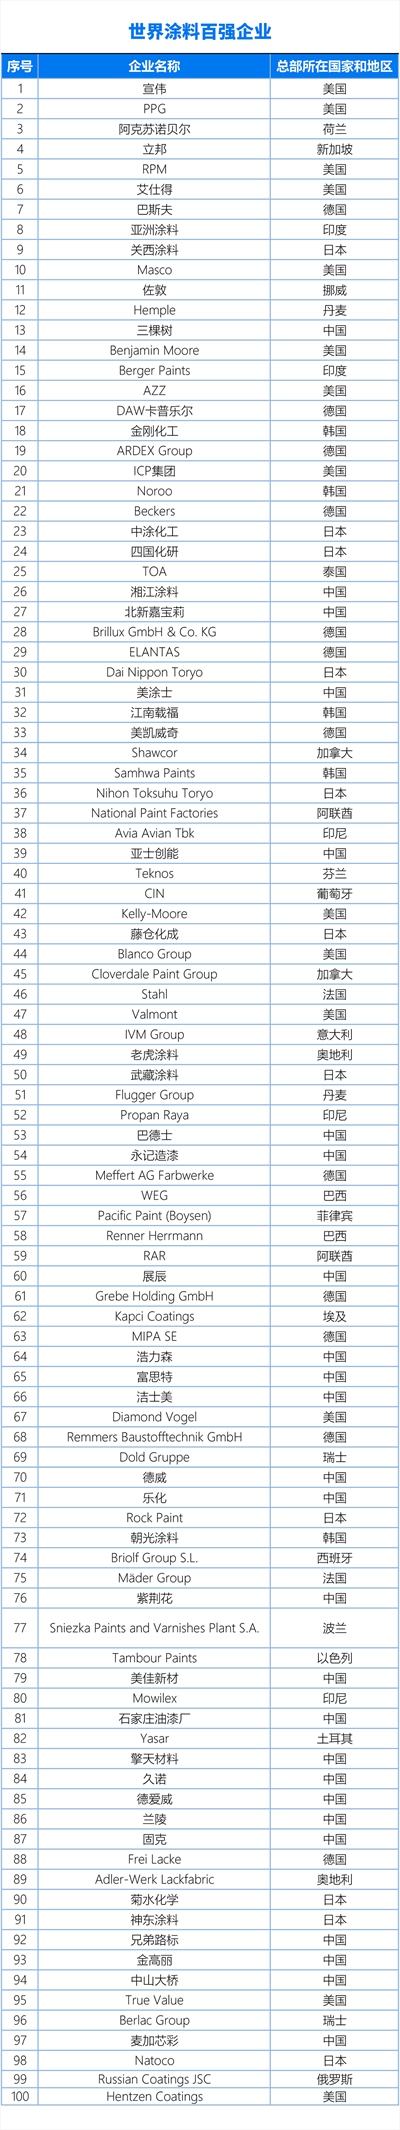 中国涂料企业百强、亚太涂料企业70强、世界涂料企业百强榜单首发